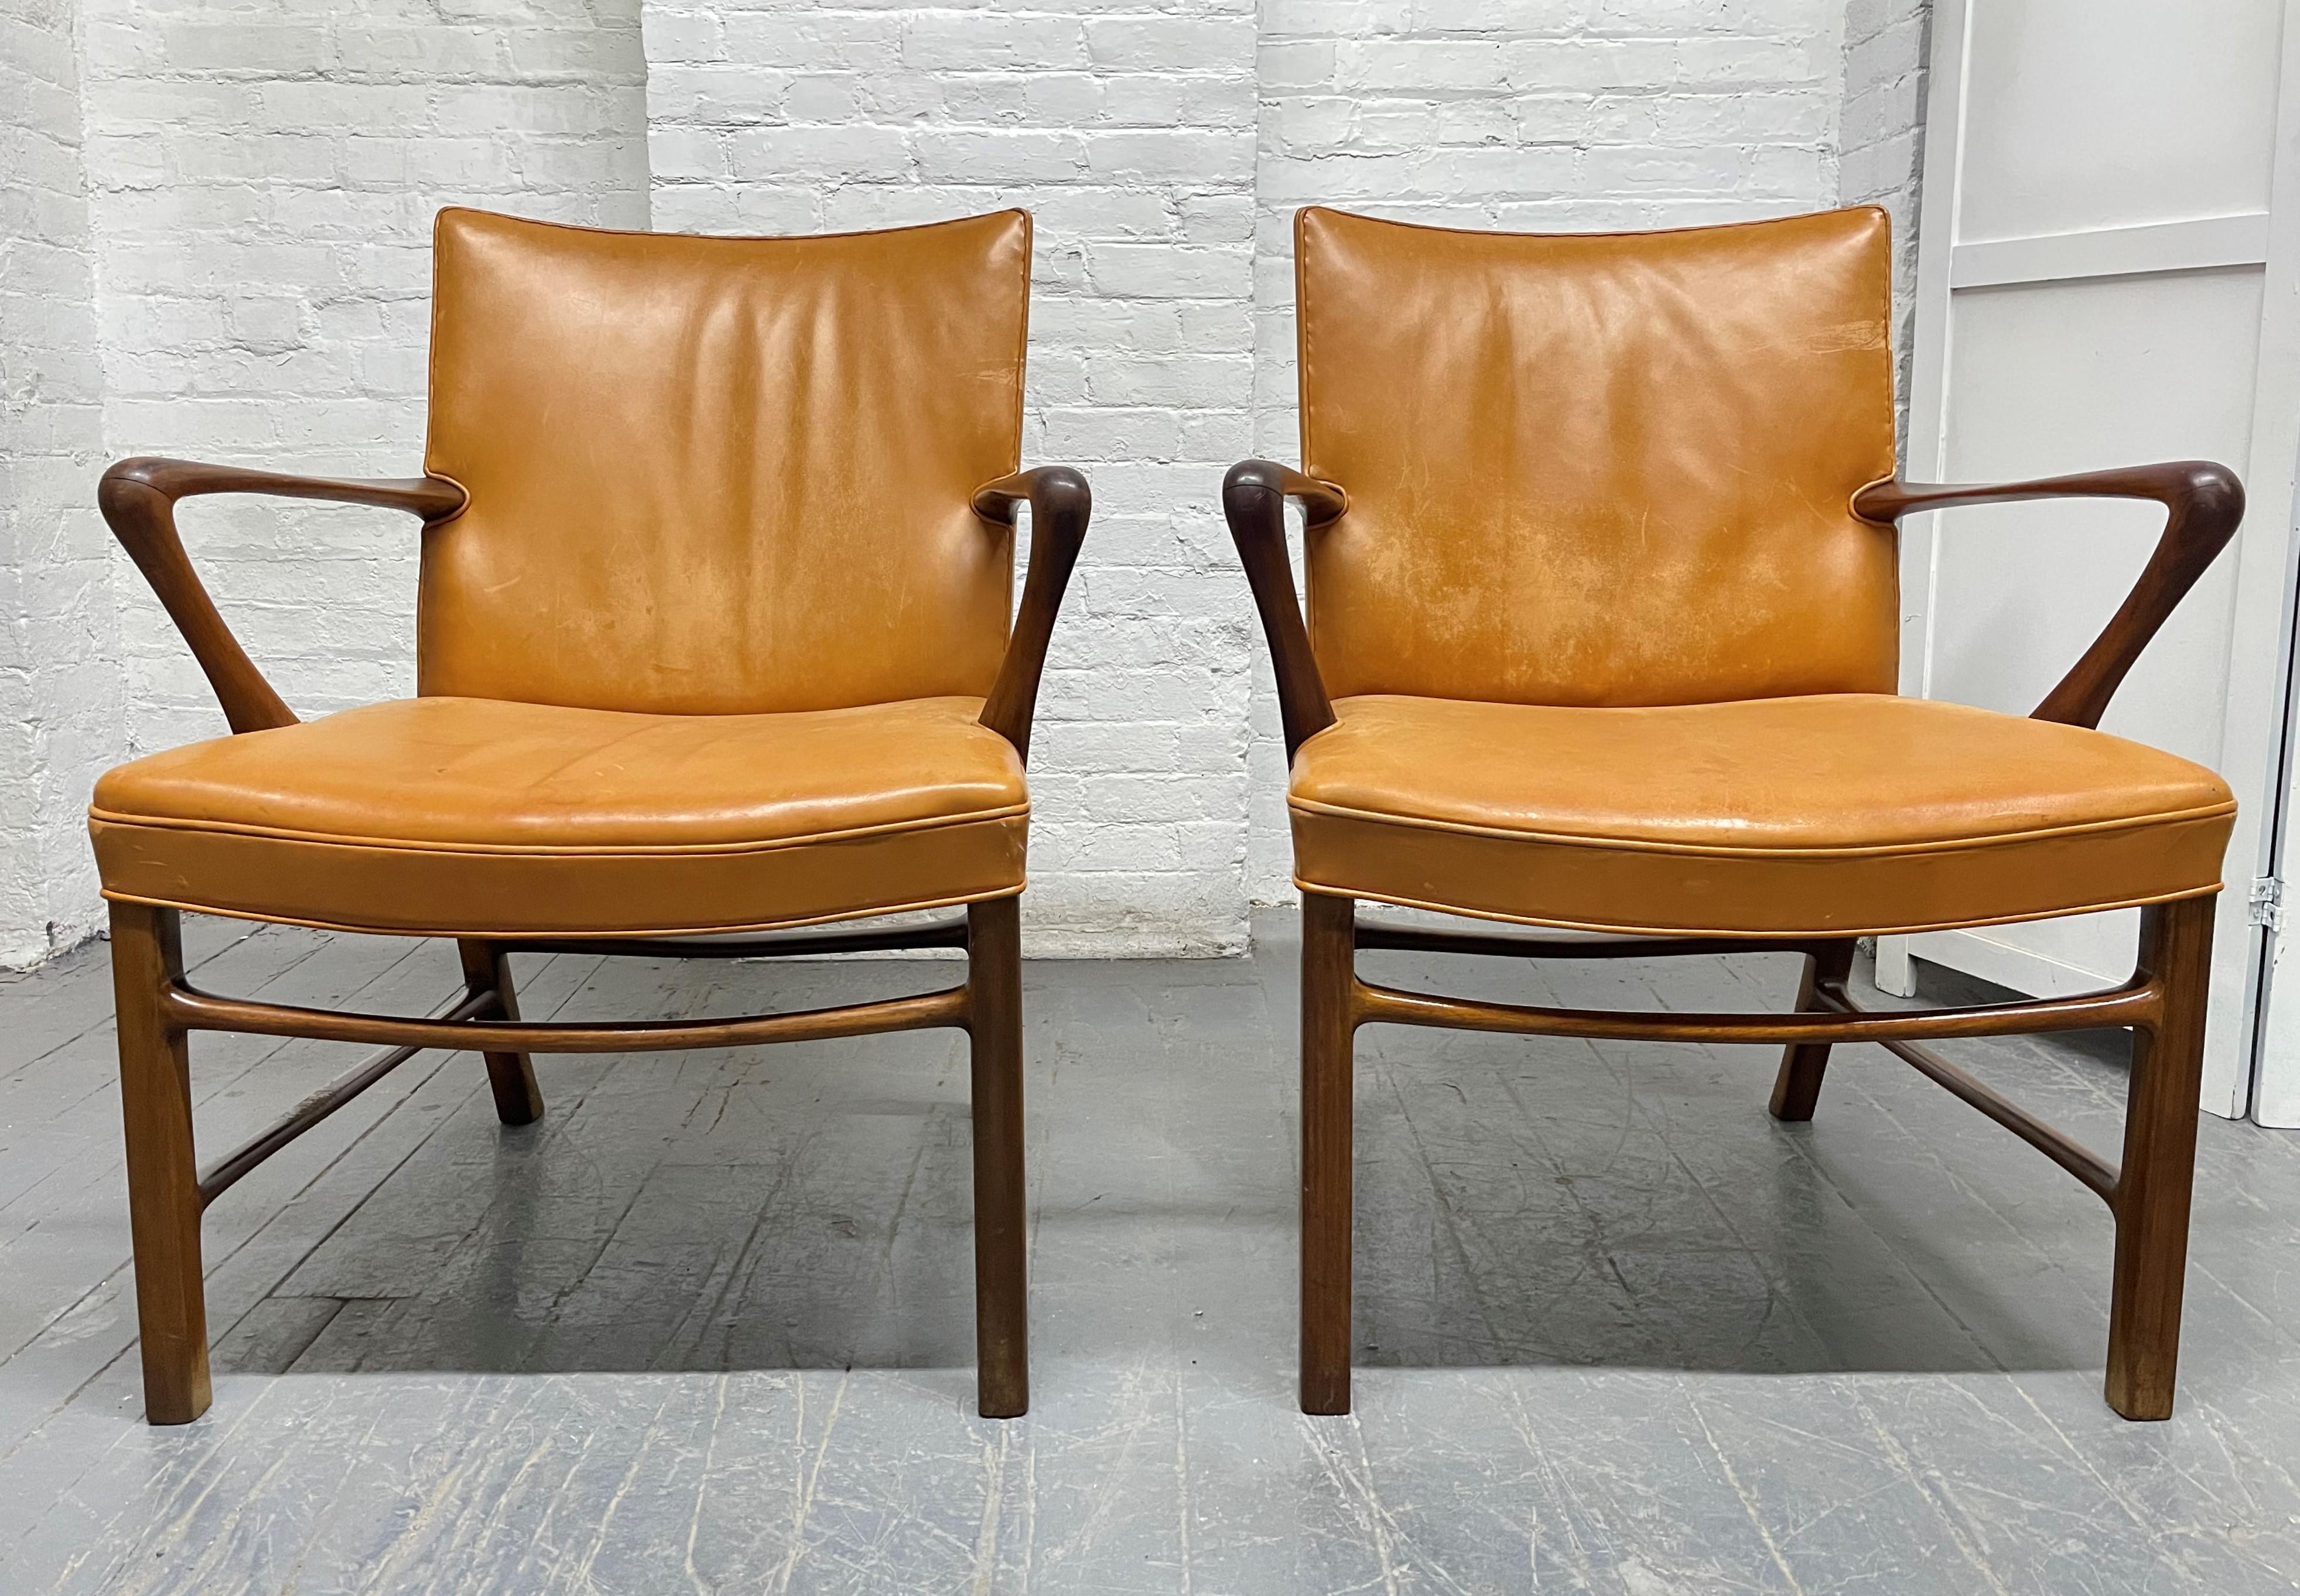 Zwei Sessel von Palle Suenson für Jacob Kjaer. Die Gestelle der Stühle sind aus Nussbaumholz und mit dem originalen Nigerleder bezogen. Diese Stühle haben schöne Linien und sind mit gebogenen Armlehnen gut konstruiert. Die Stühle sind in ihrem